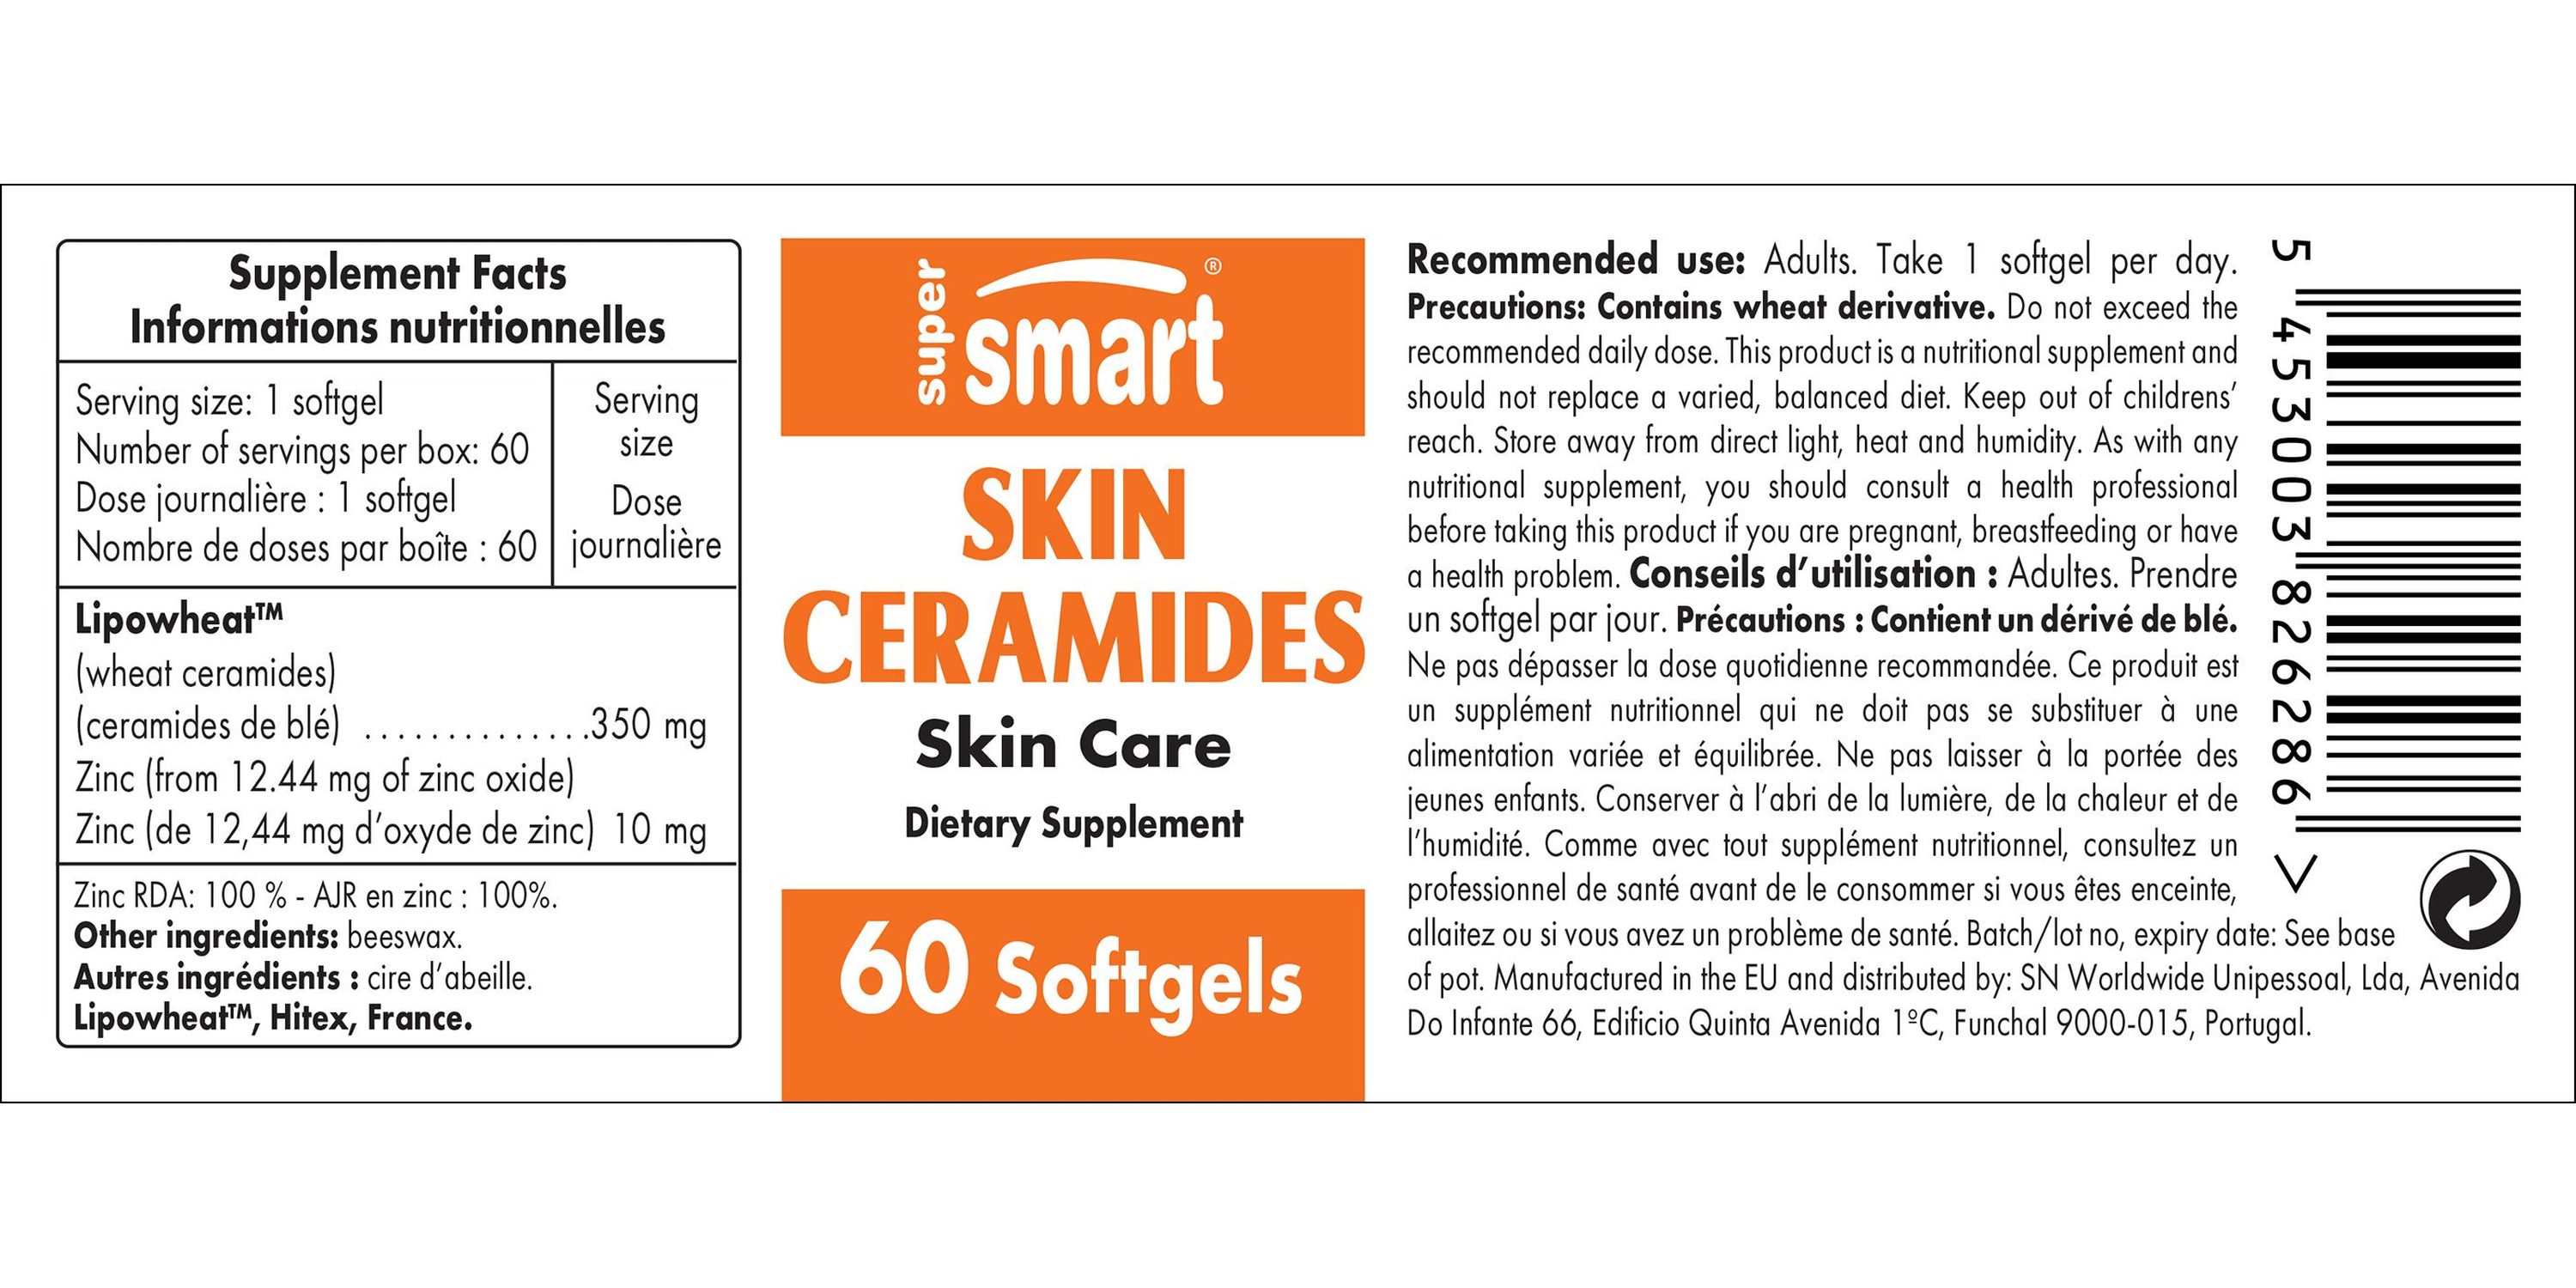 Skin Ceramides Supplement